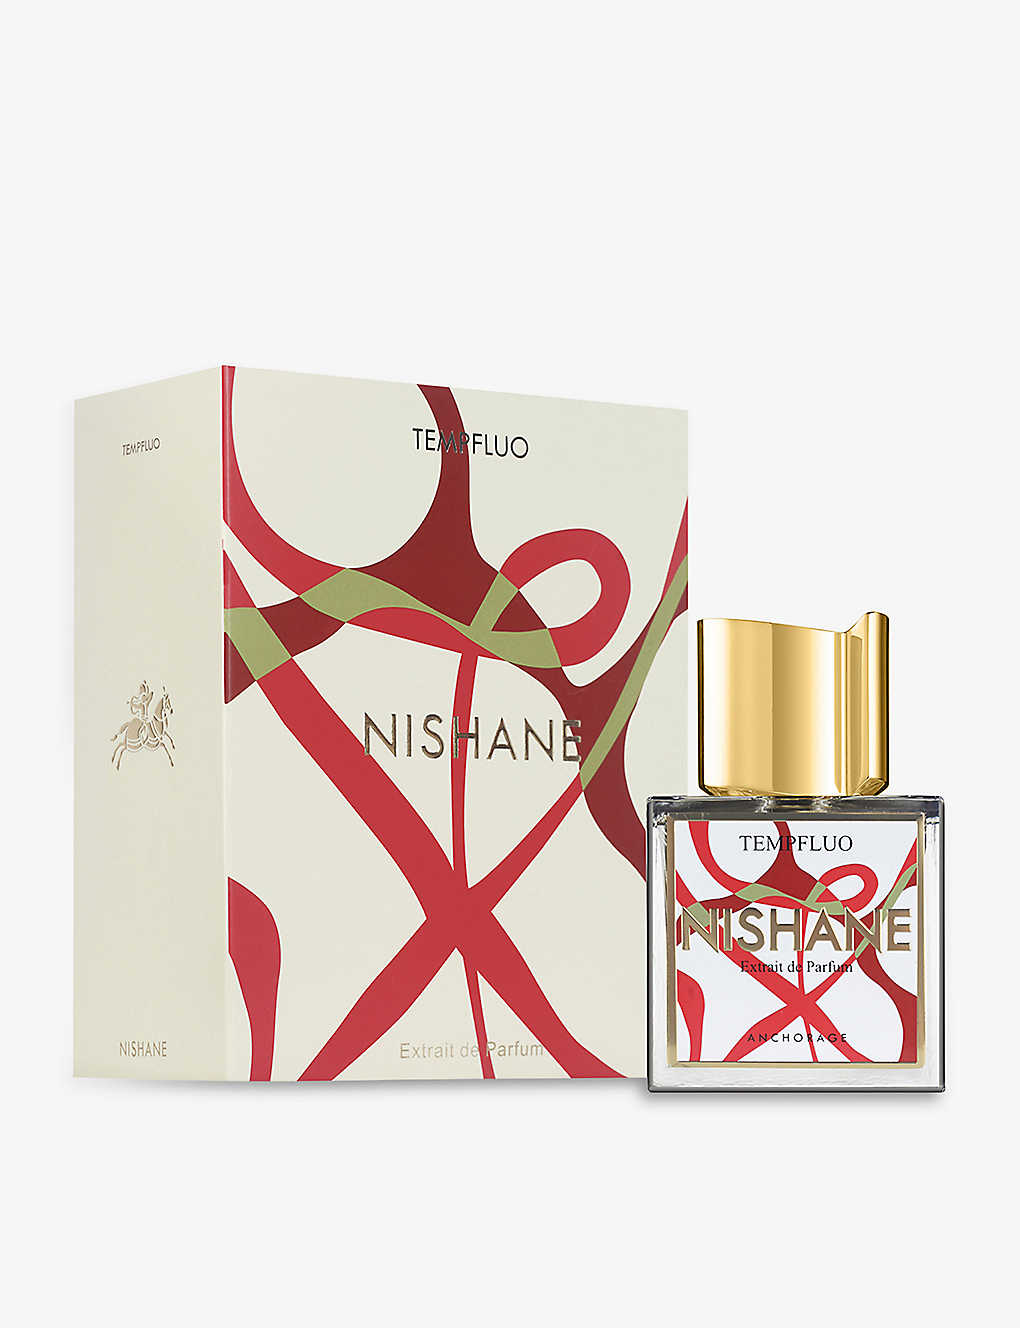 Nishane Tempfluo Extrait De Parfum